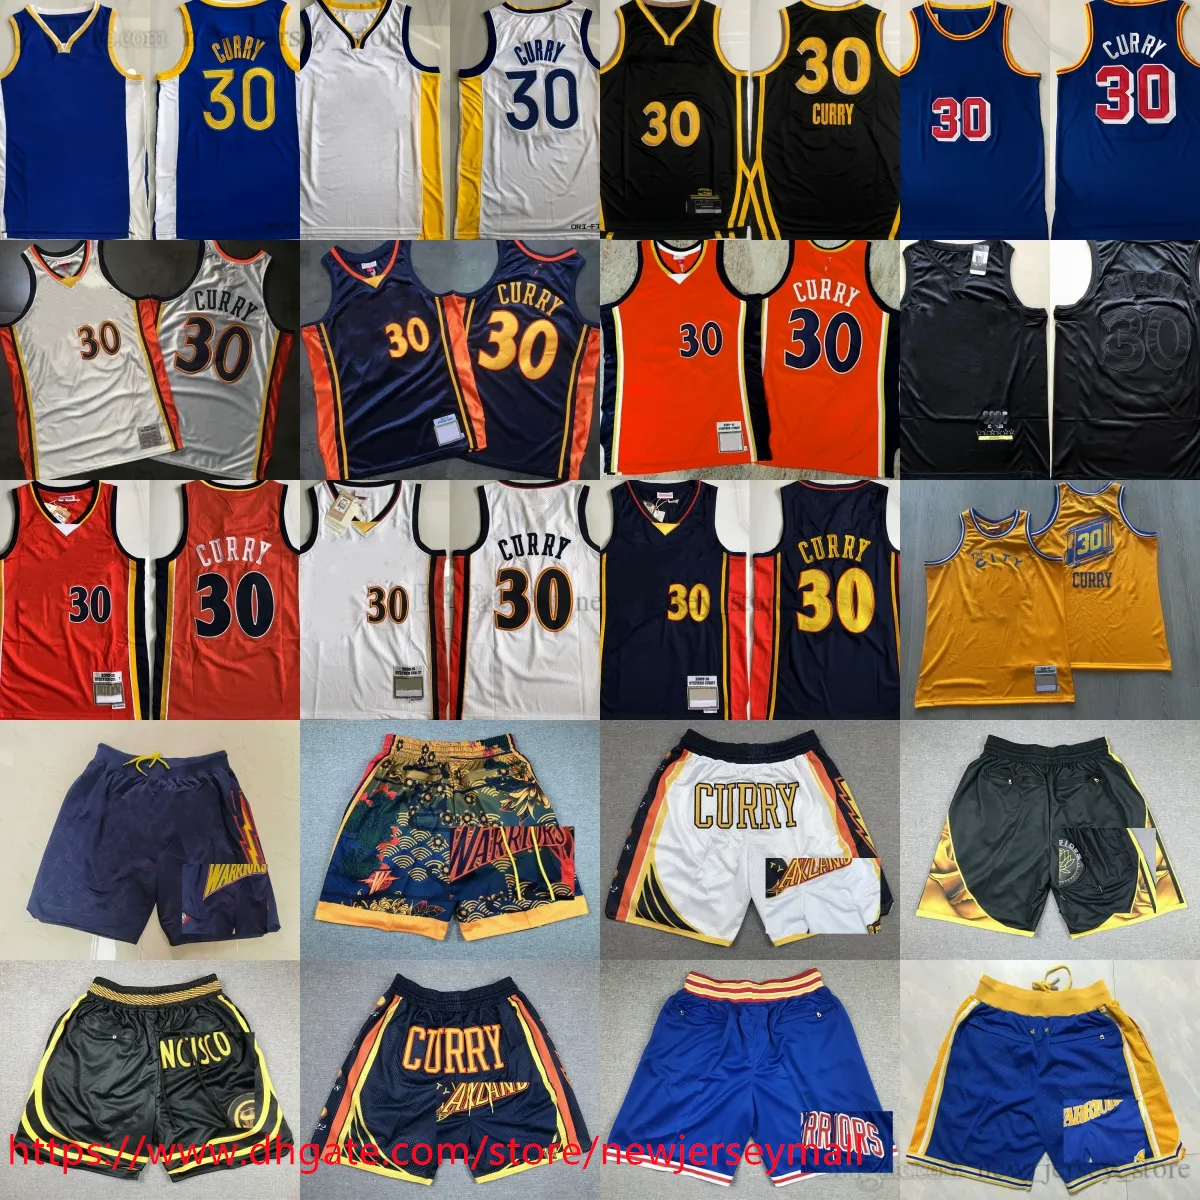 الكلاسيكية الرجعية الأصيلة التطريز 2009-10 كرة السلة 30 Stephencurry Jersey Vintage Blue Orange White Treatable Sport Real Stitched Jersey Shorts New City